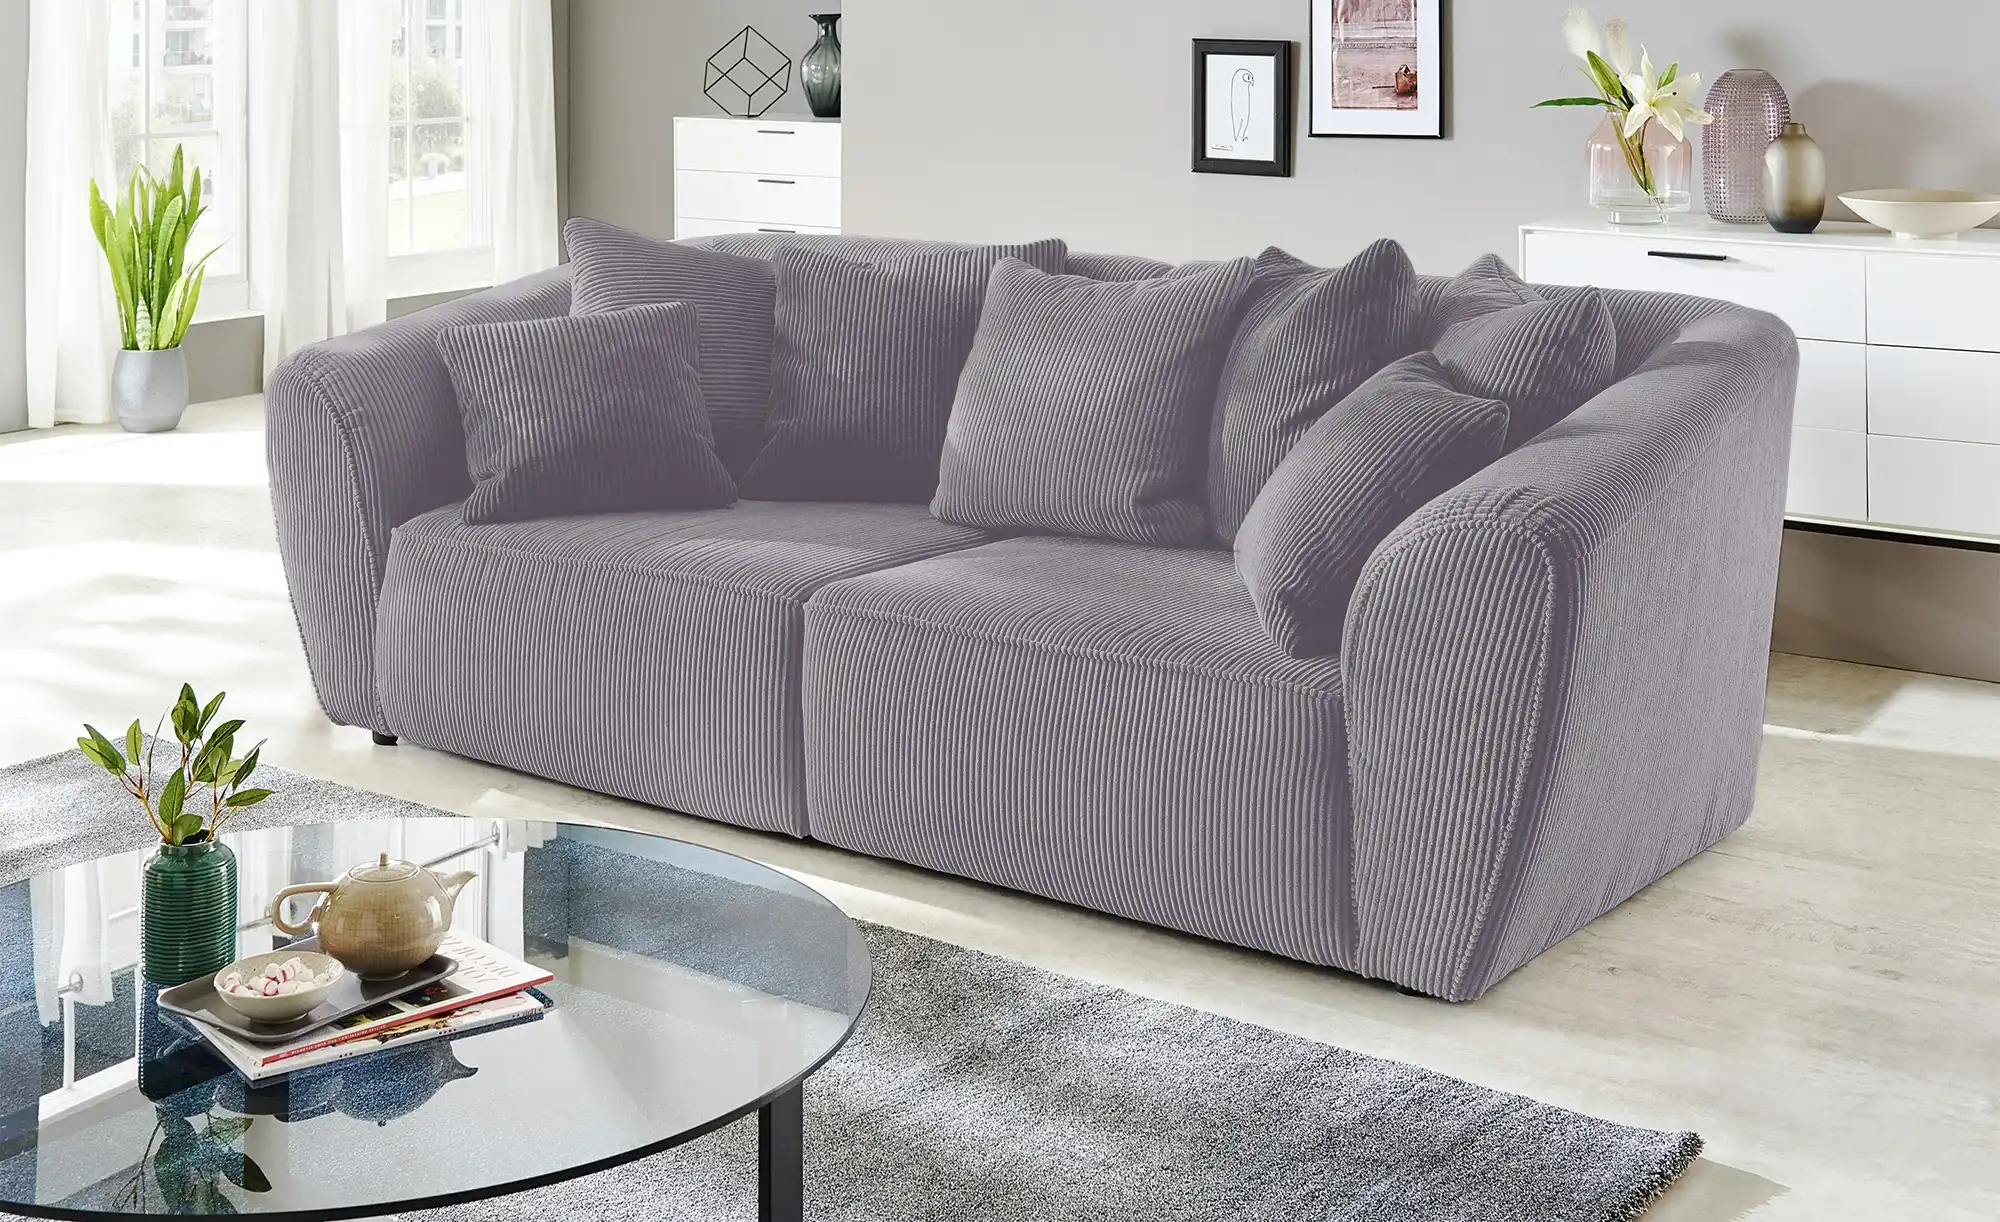 smart big sofa savita, gefunden bei möbel höffner